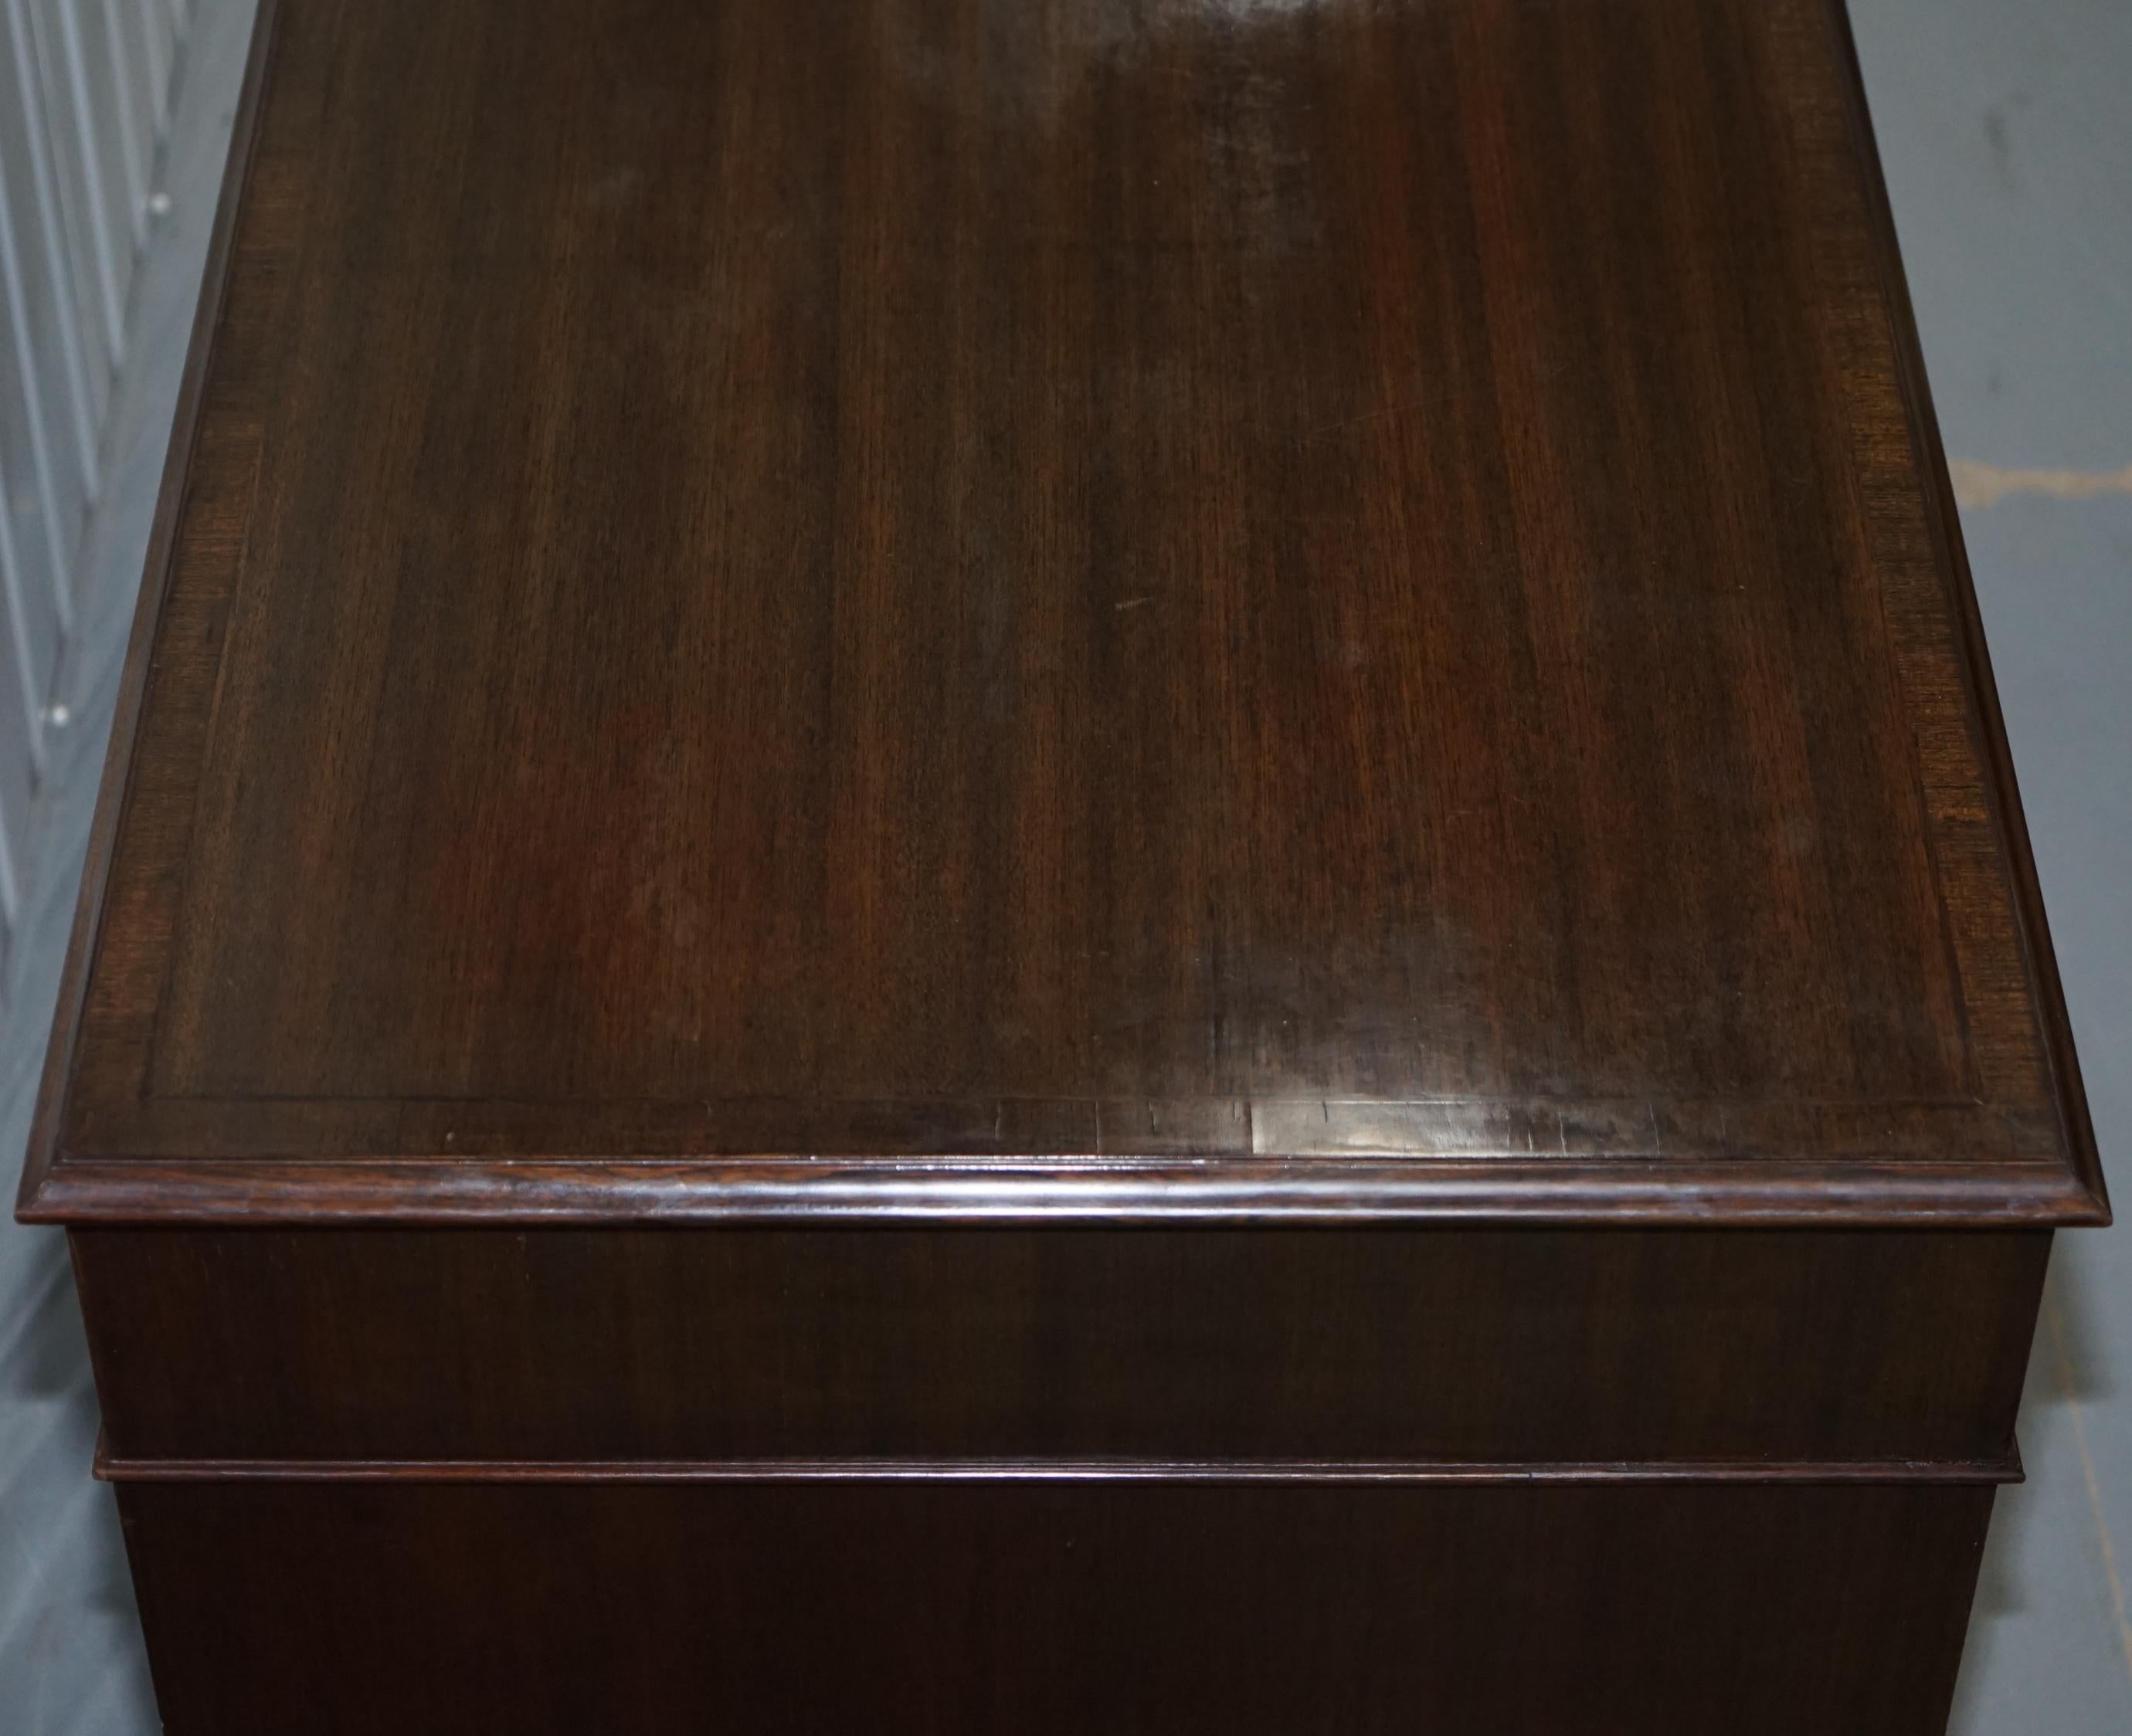 Hand-Crafted Vintage Stunning Large Solid Hardwood Twin Pedestal Partner Desk Rare Find